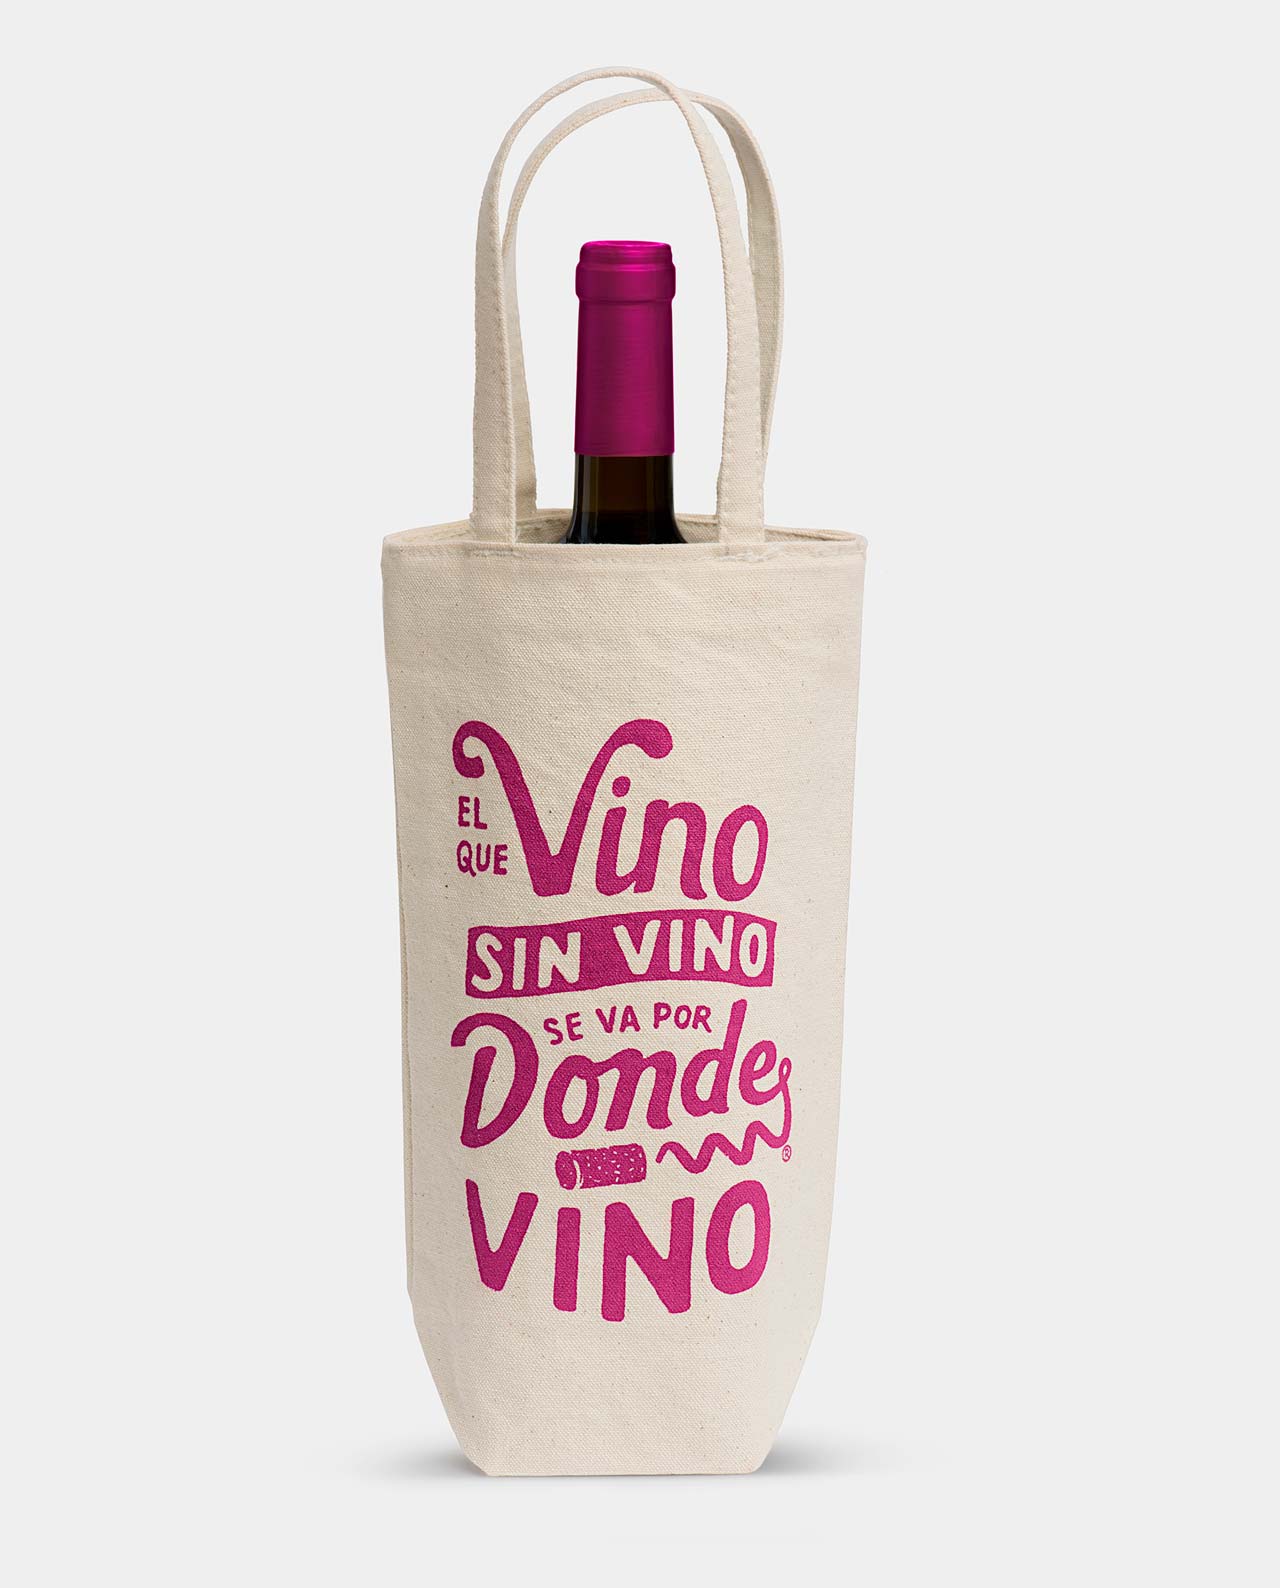 La bolsa ideal para regalar vino., El que Vino sin Vino se va por donde  Vino., Comercio justo.